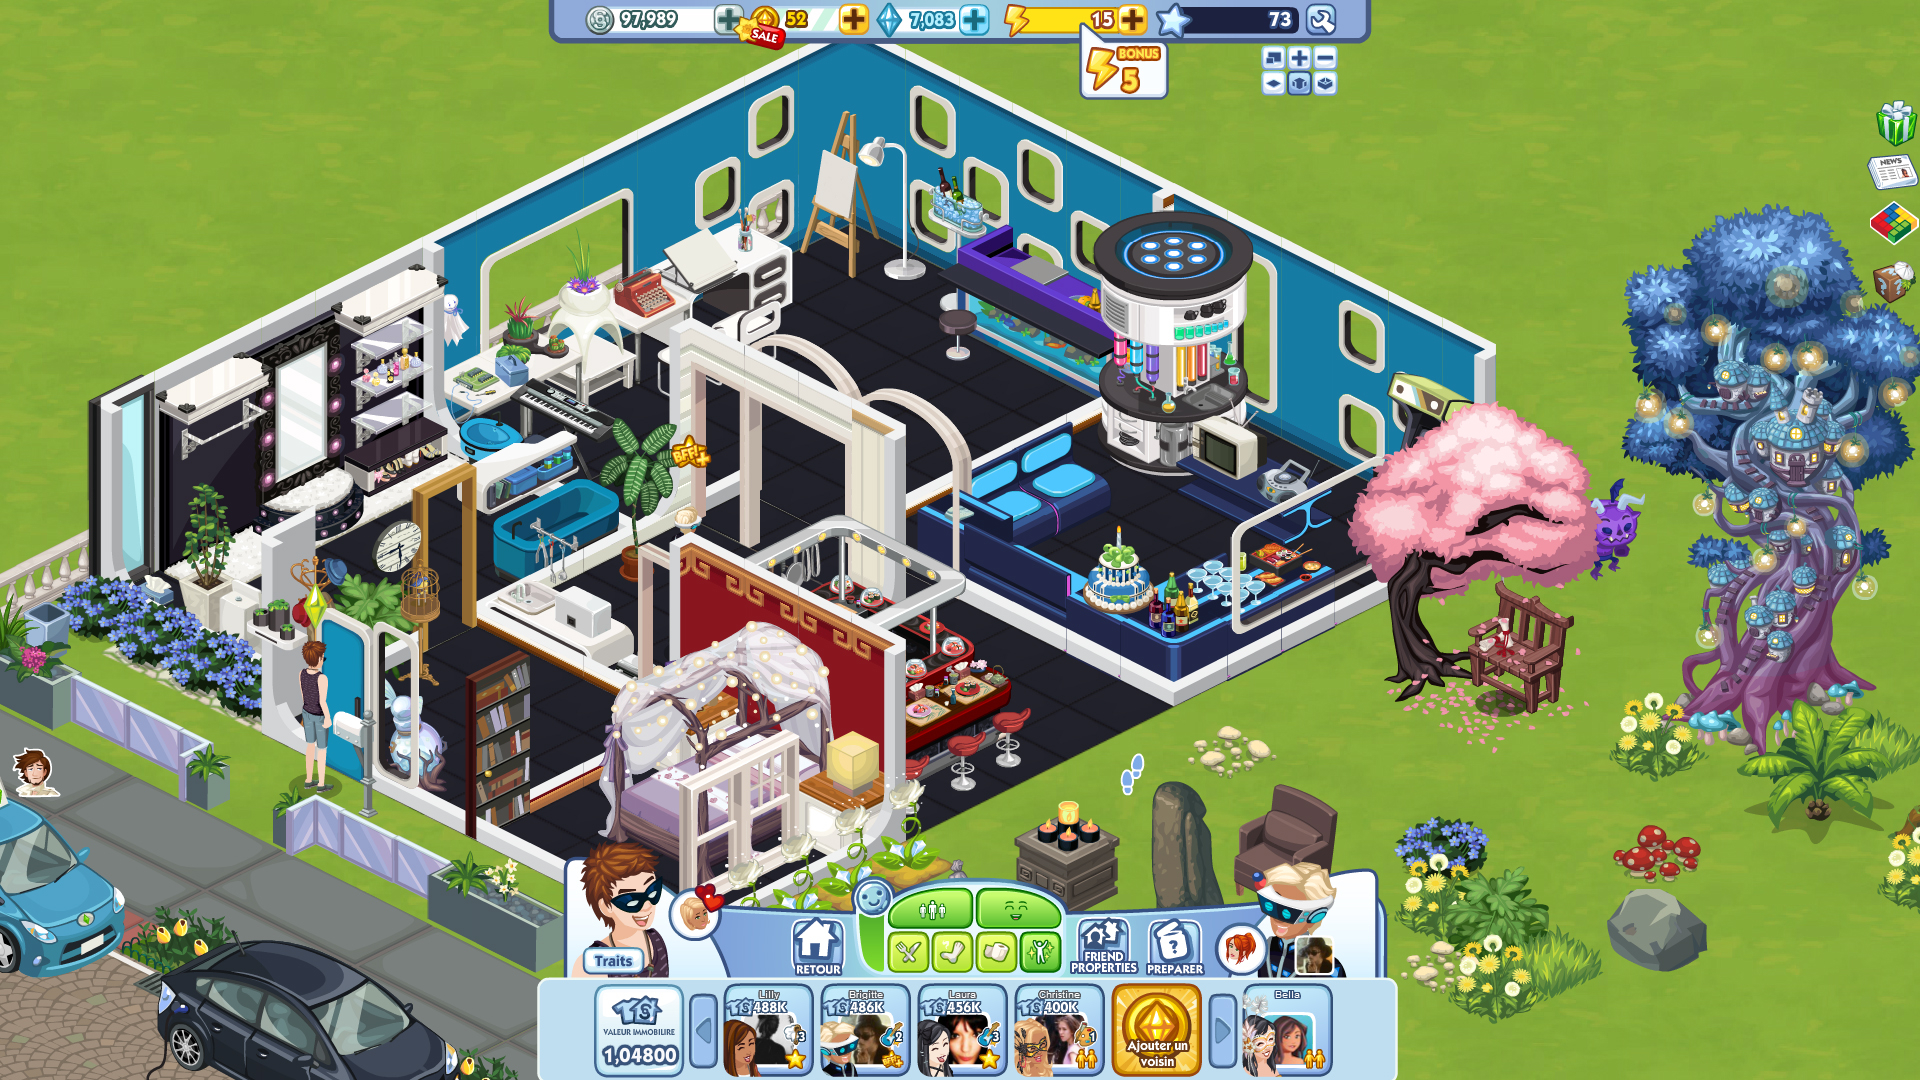 Sims Social Desktop Wallpaper Of Video Game